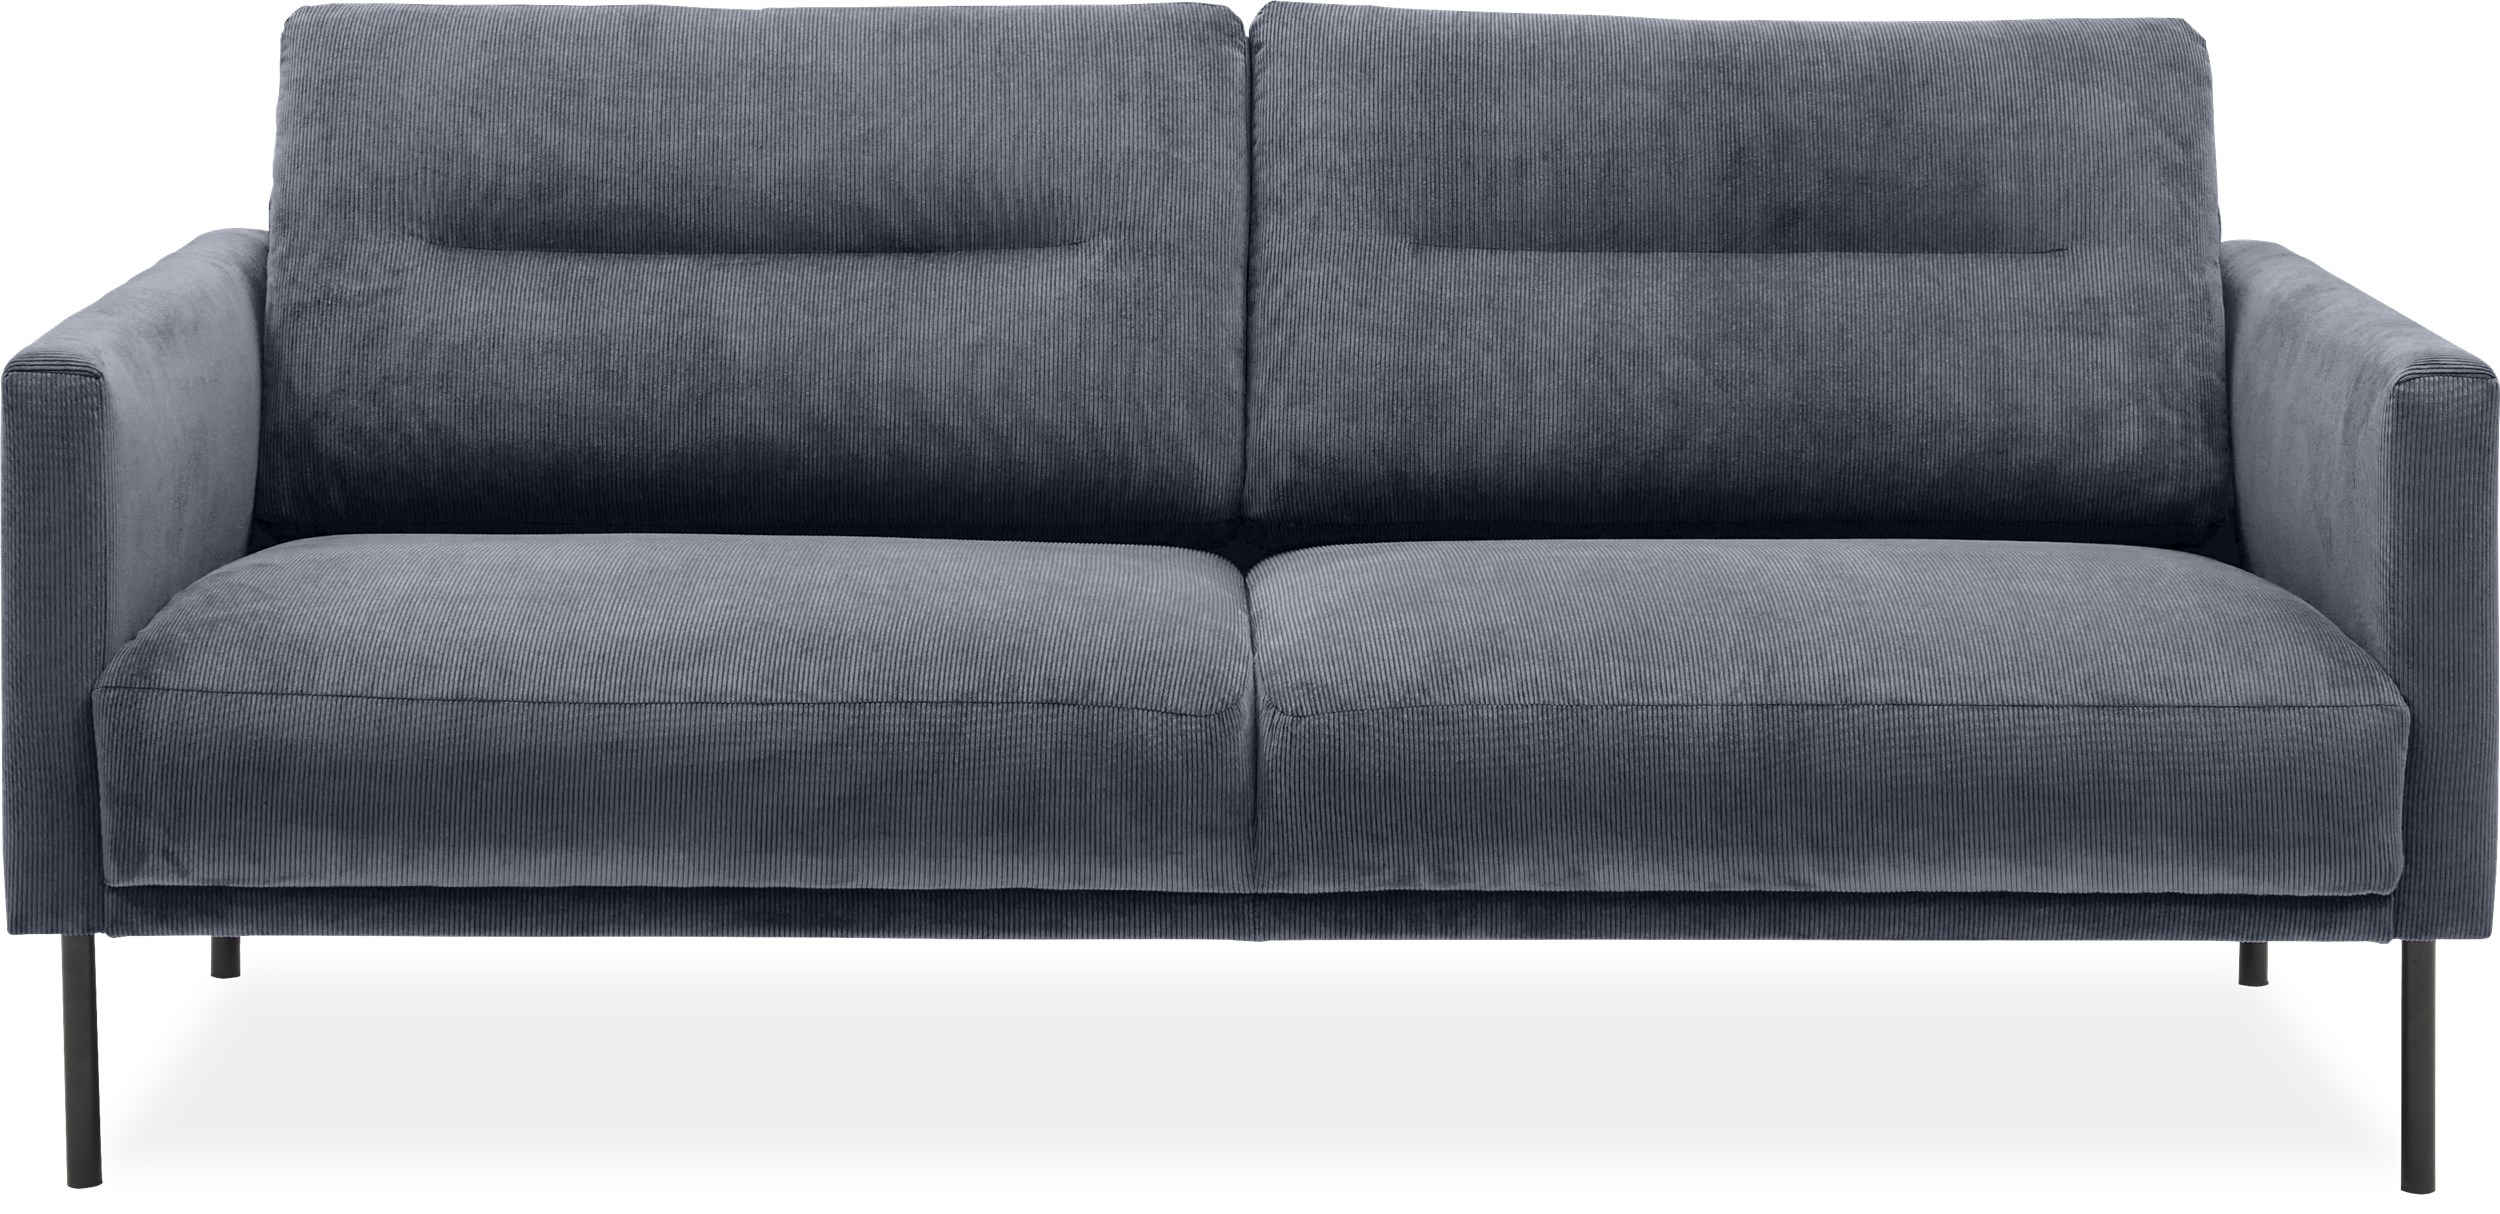 Larvik 2½ pers. Sofa - Wave 40 Slate grey stof og ben i sortlakeret metal